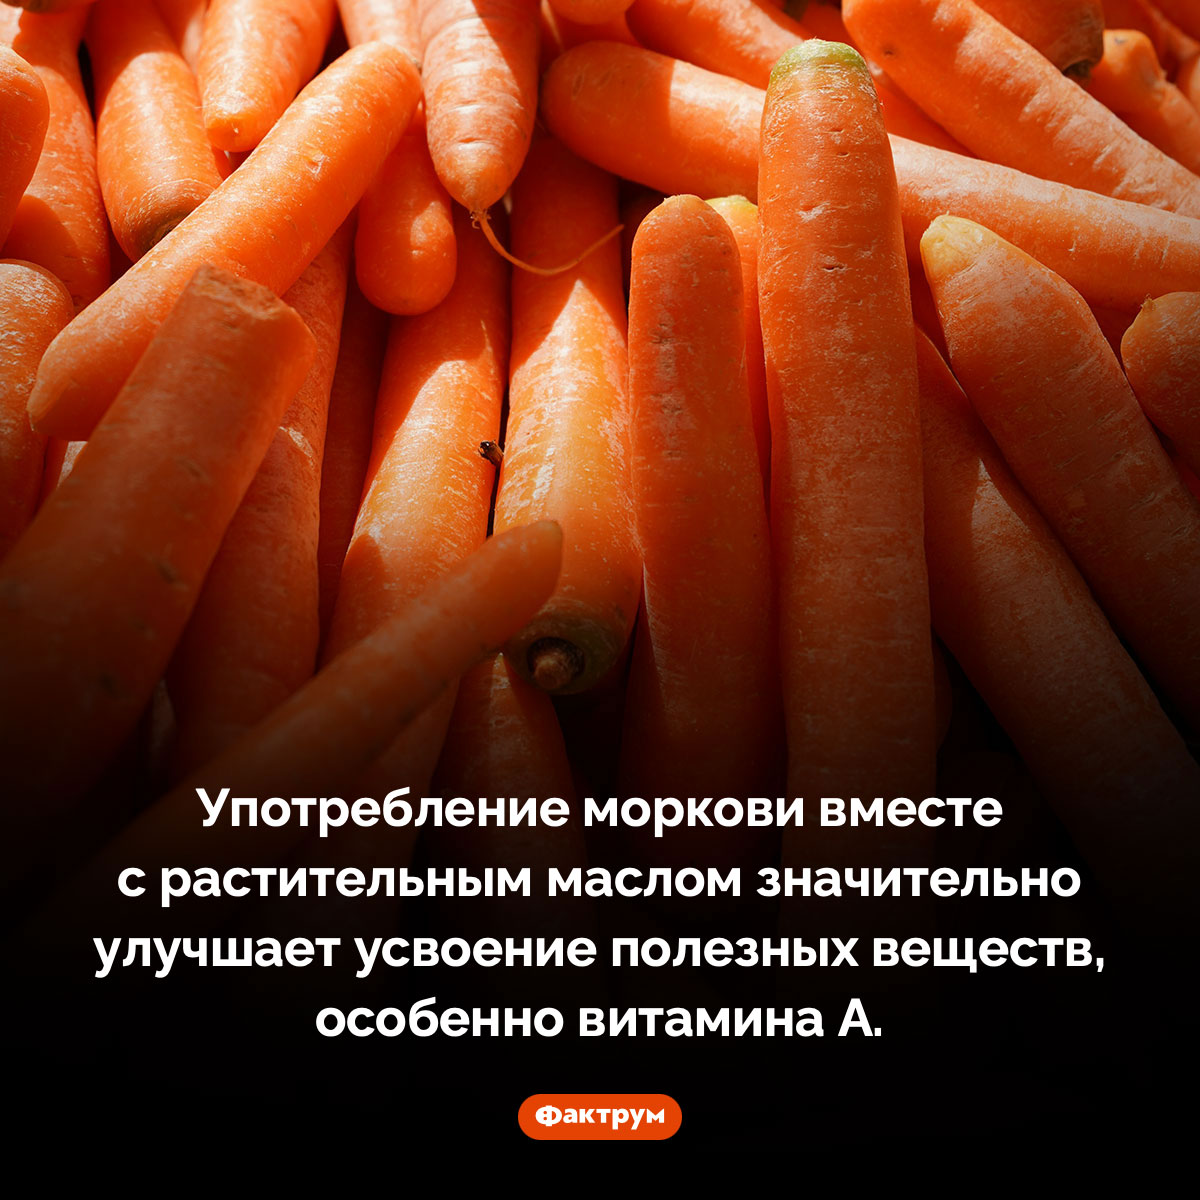 Морковку надо есть с растительным маслом. Употребление моркови вместе с растительным маслом значительно улучшает усвоение полезных веществ, особенно витамина А.